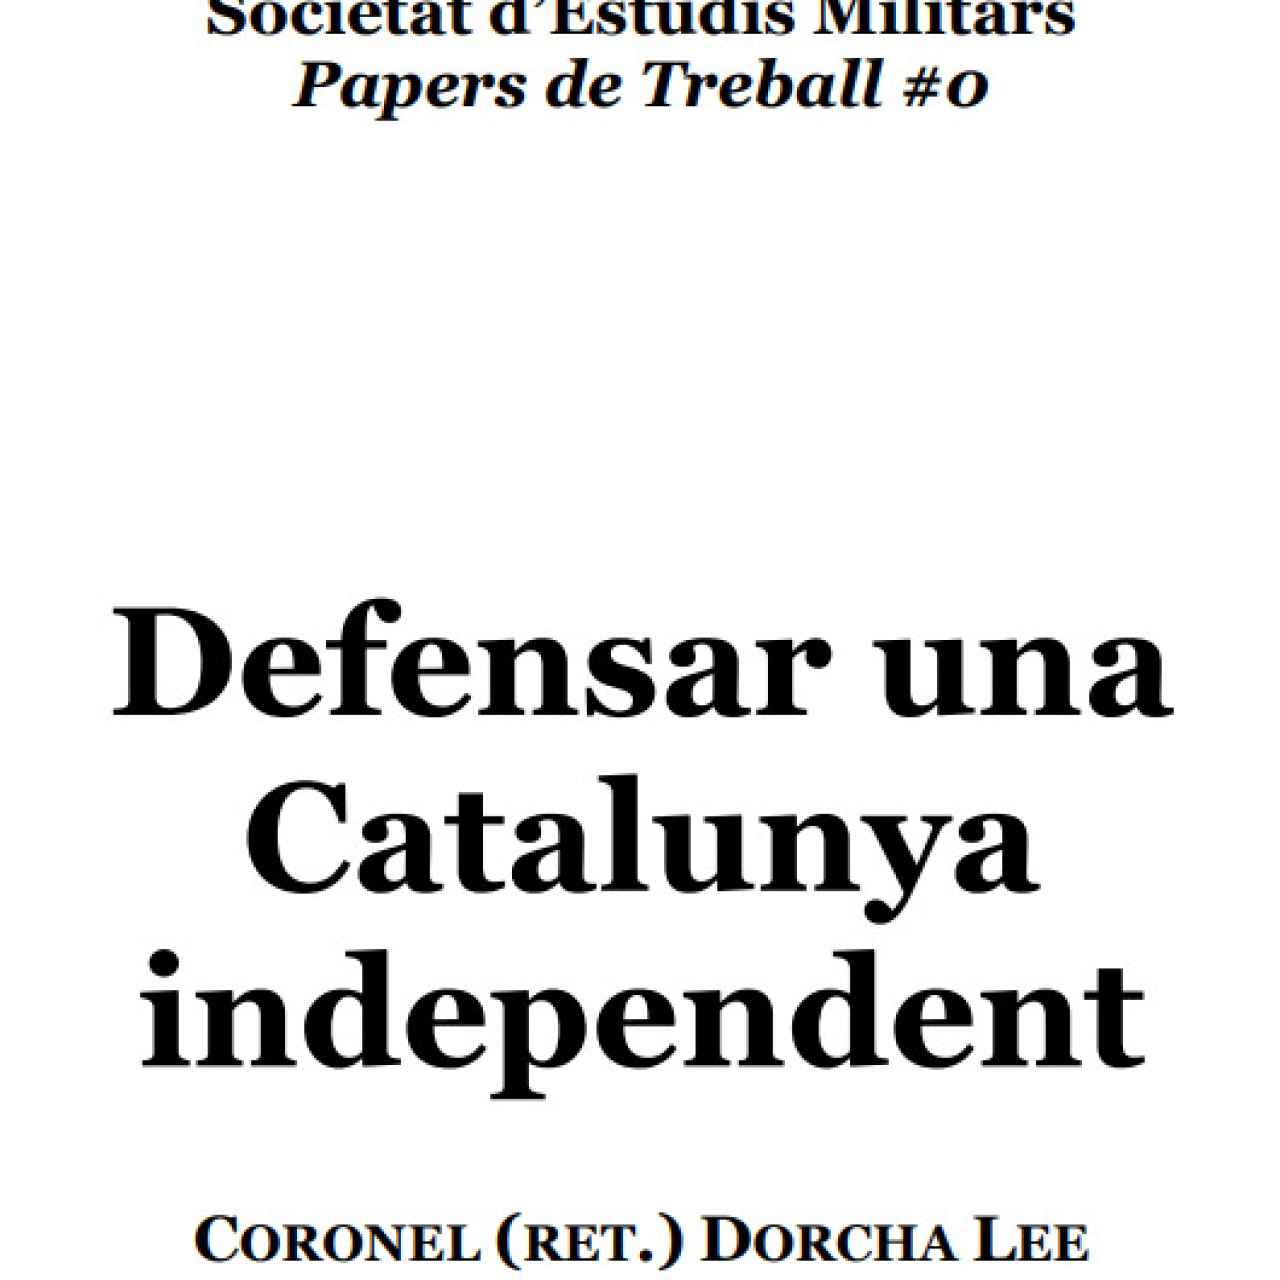 Portada del informe presentado en 2018 por la Societat d'Estudis Militars (SEM).